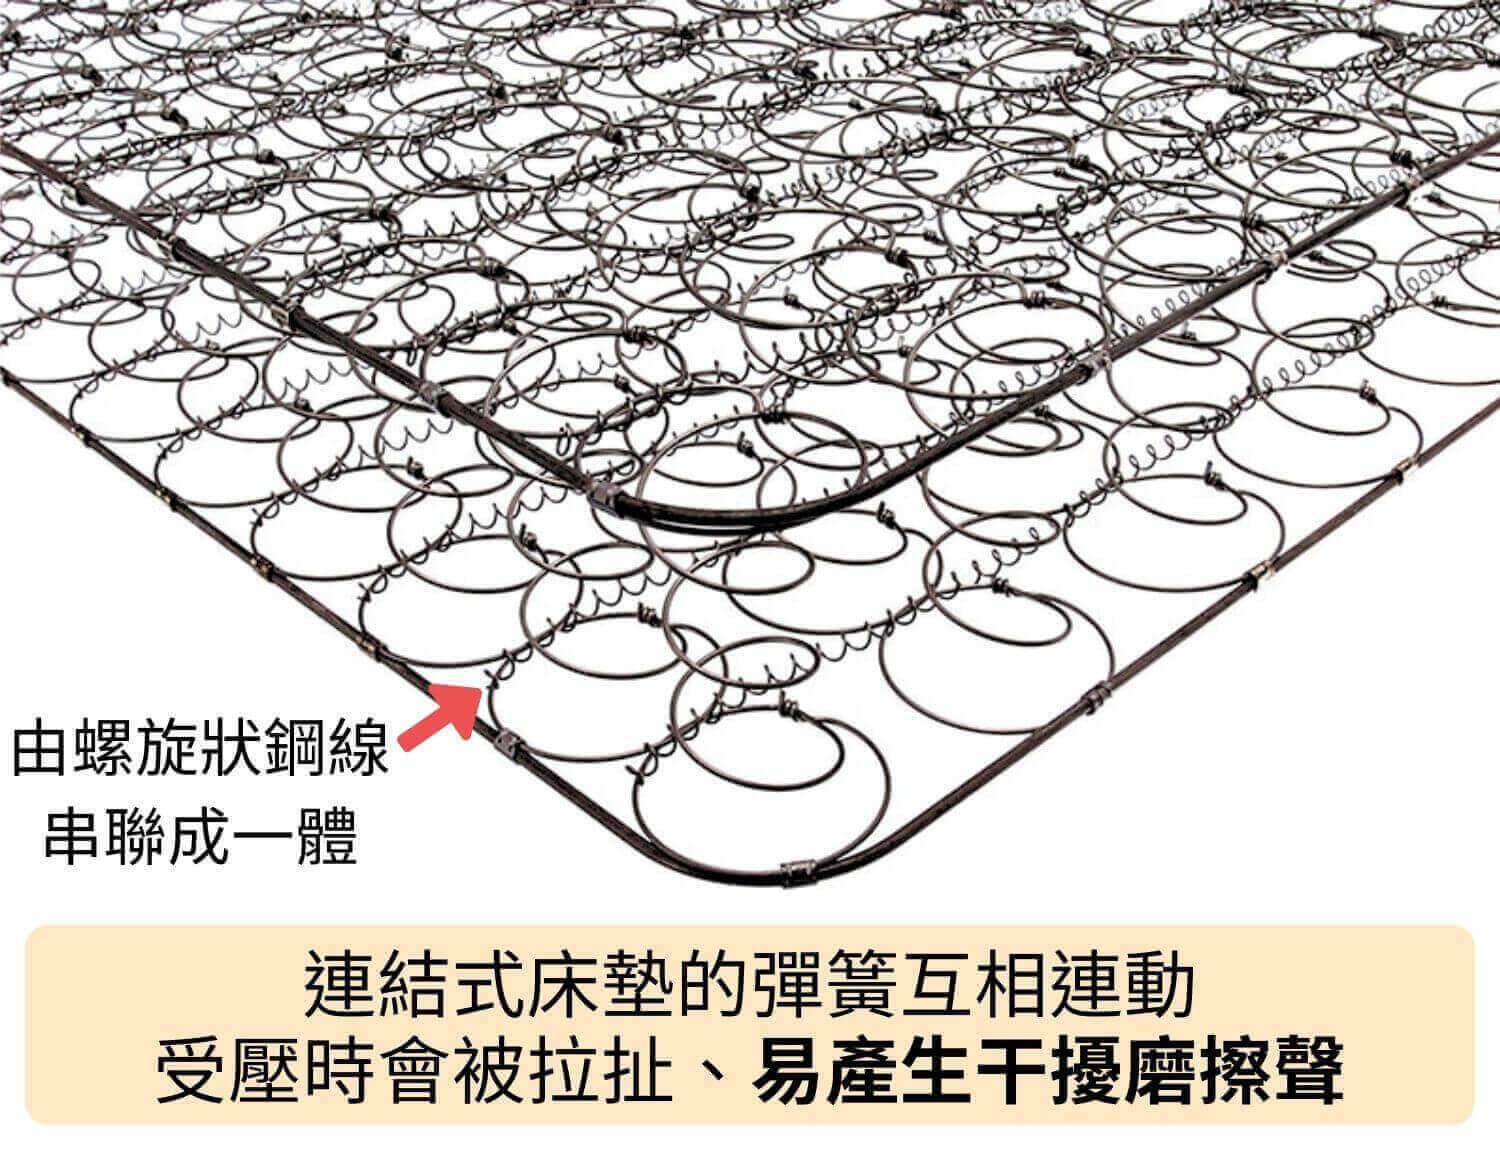 連結式床墊由螺旋狀鋼線串聯成一體，彈簧互相連動受壓時會被拉扯、易產生干擾磨擦聲